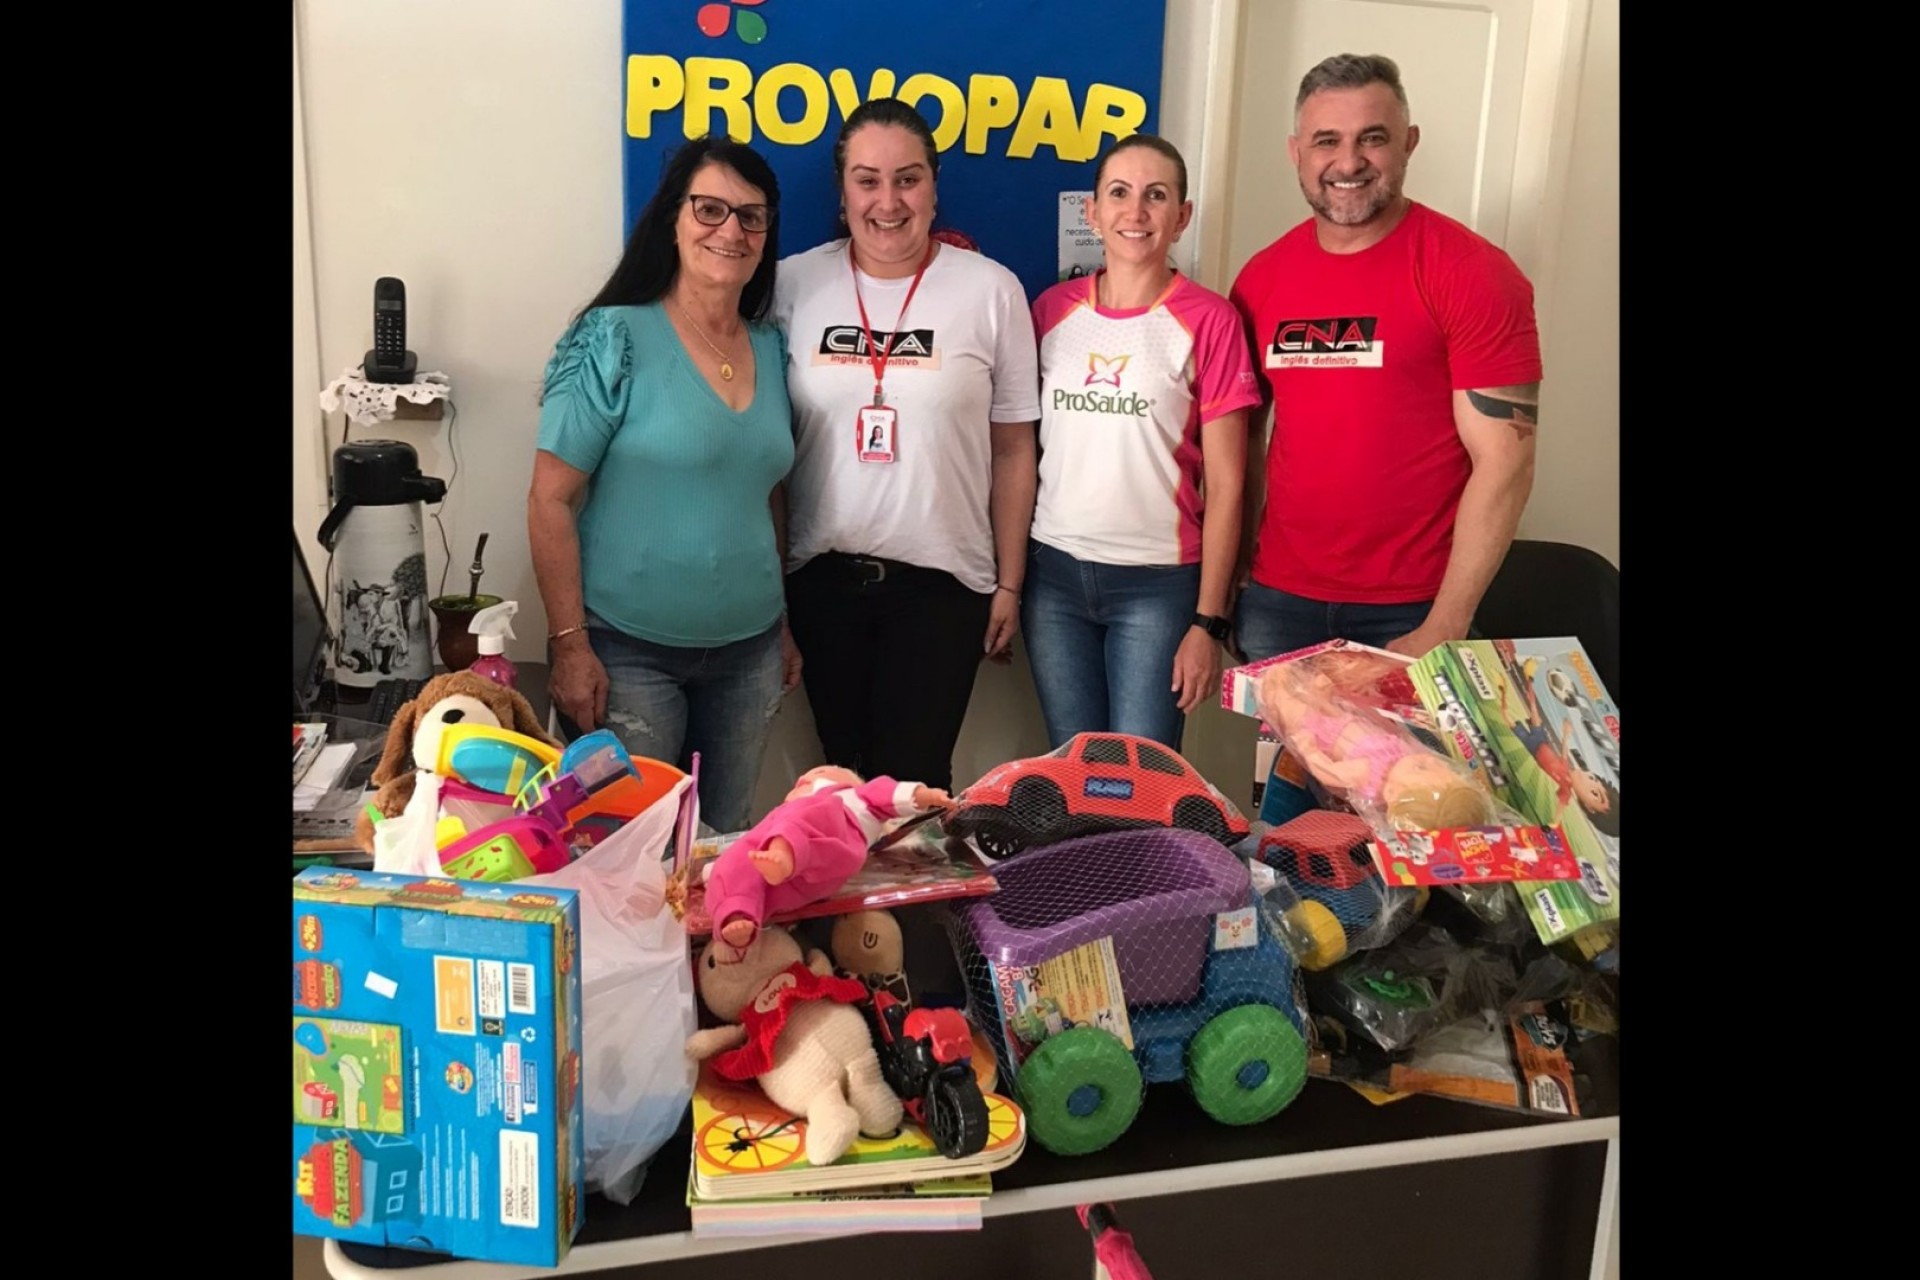 Provopar recebe doação de brinquedos de ação realizada pelo CNA em parceria com a ProSaúde